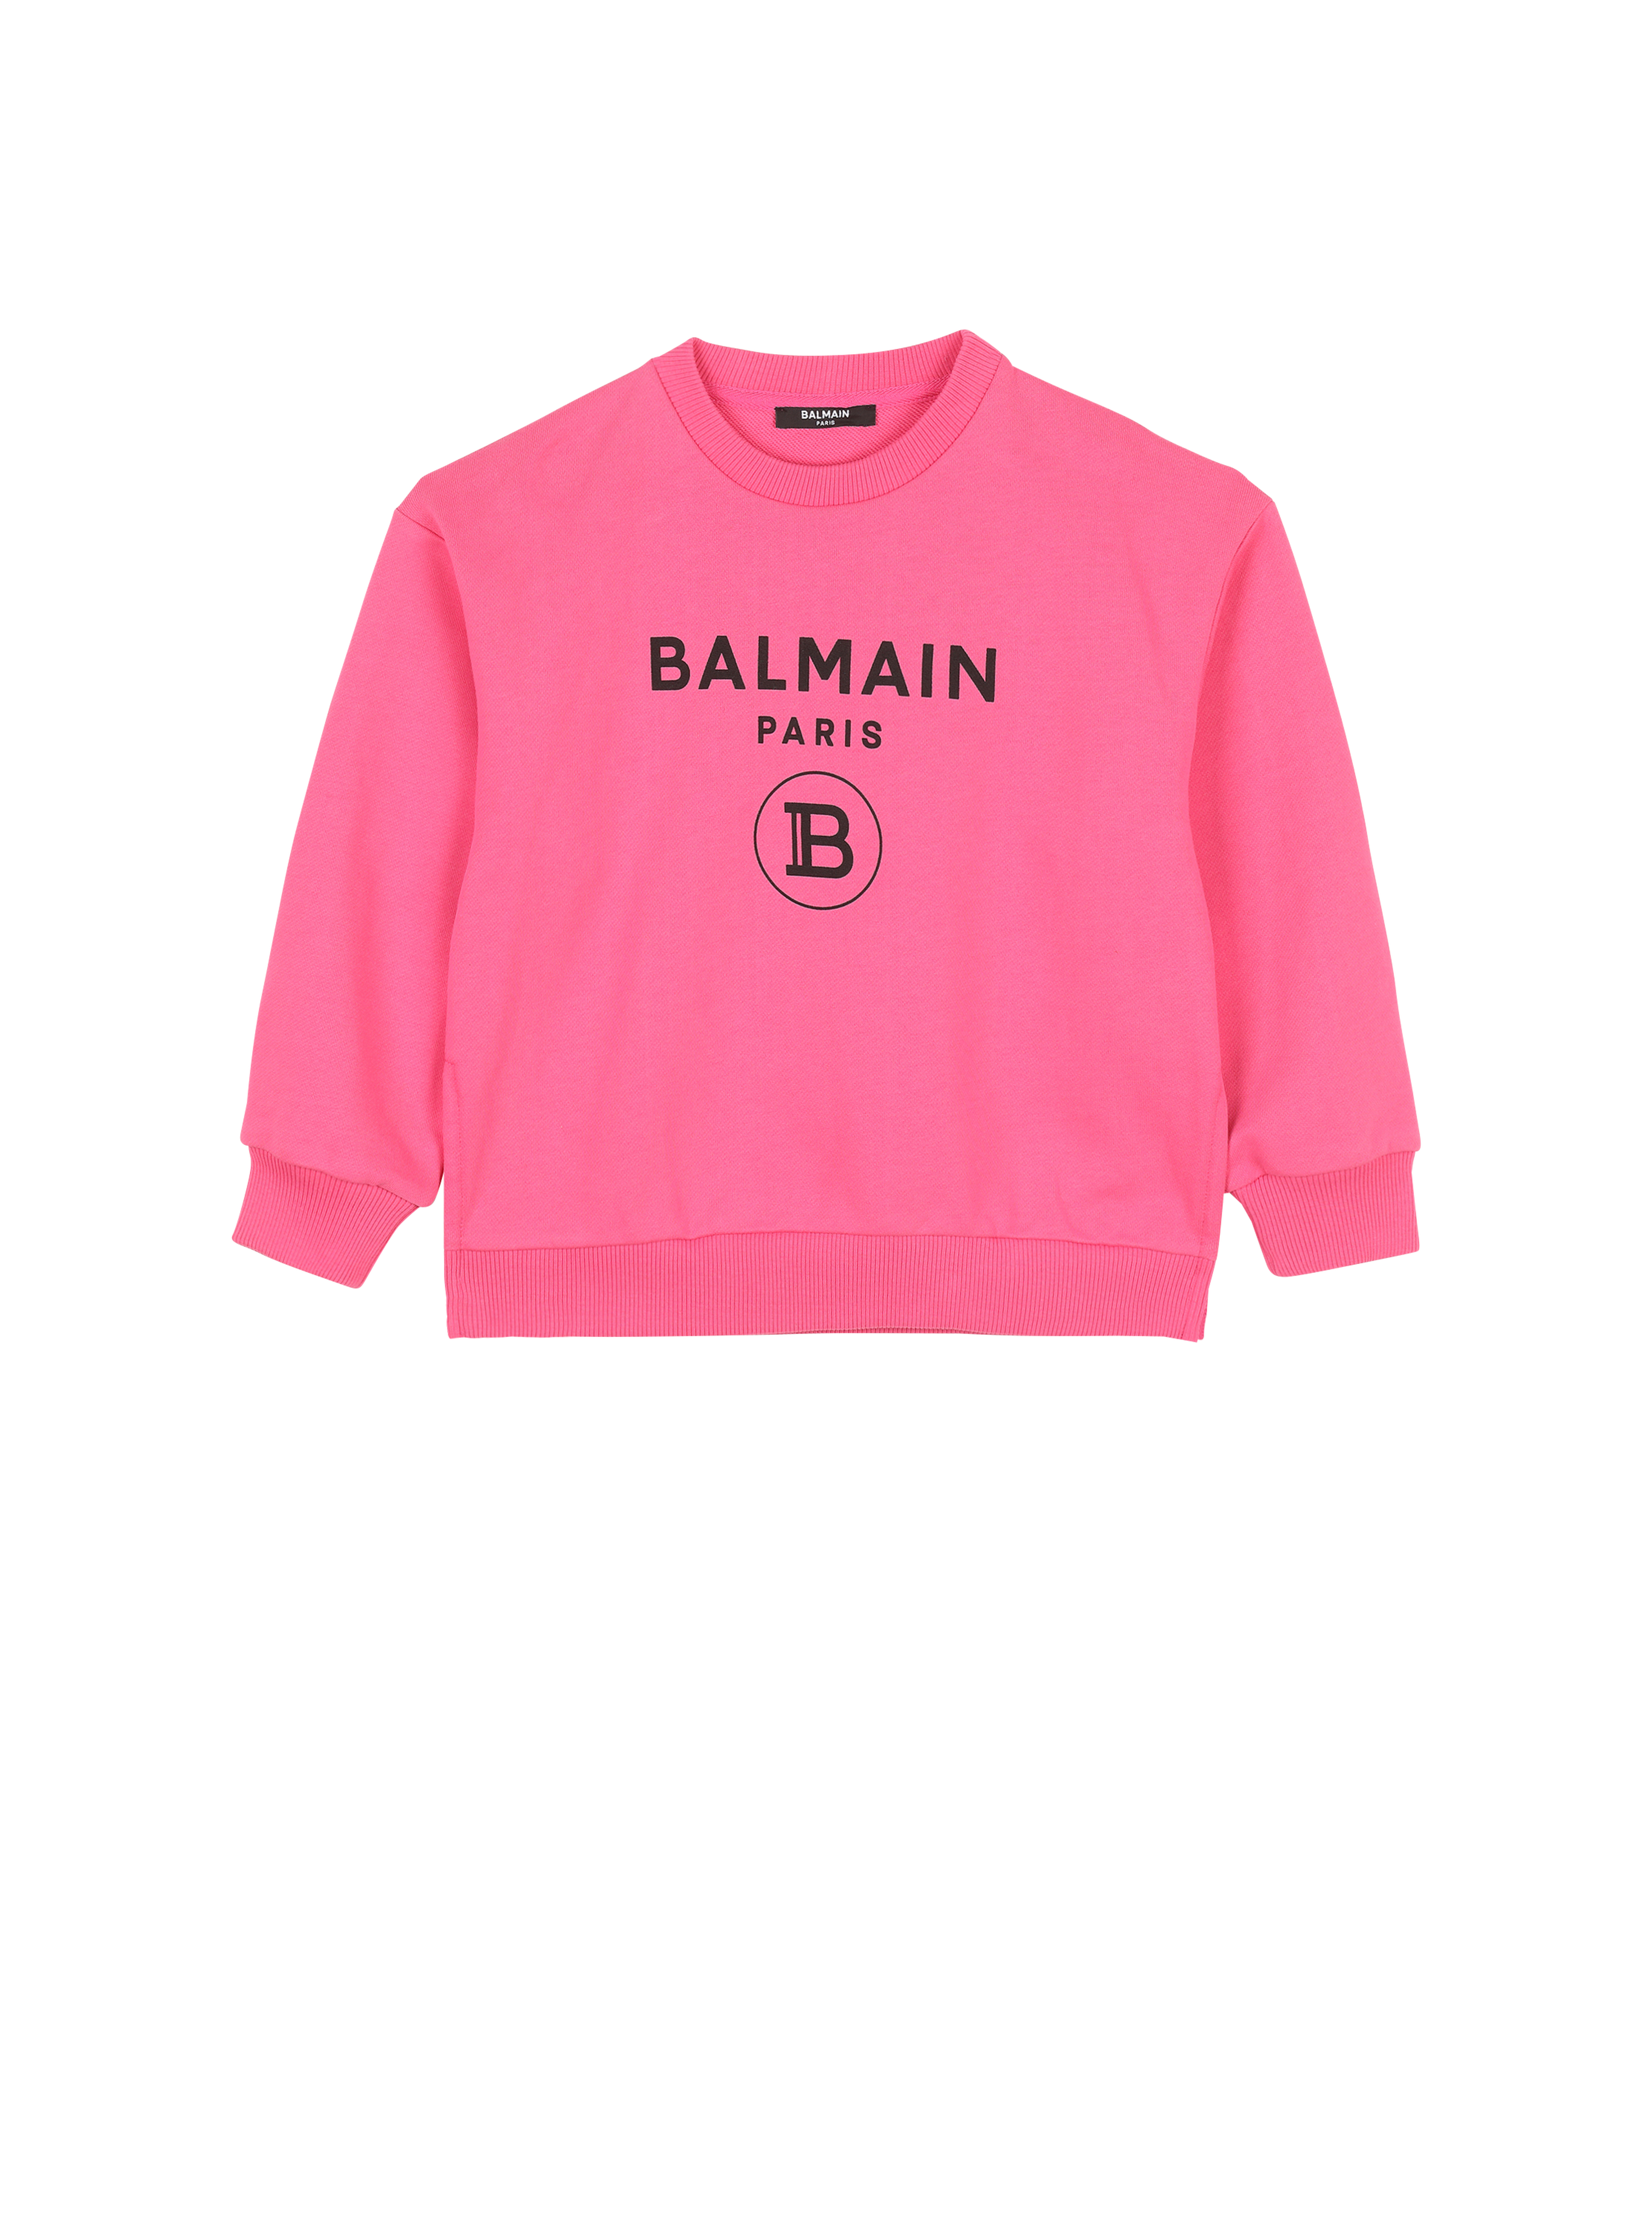 バルマンロゴ入りのコットン製セーター, ピンク